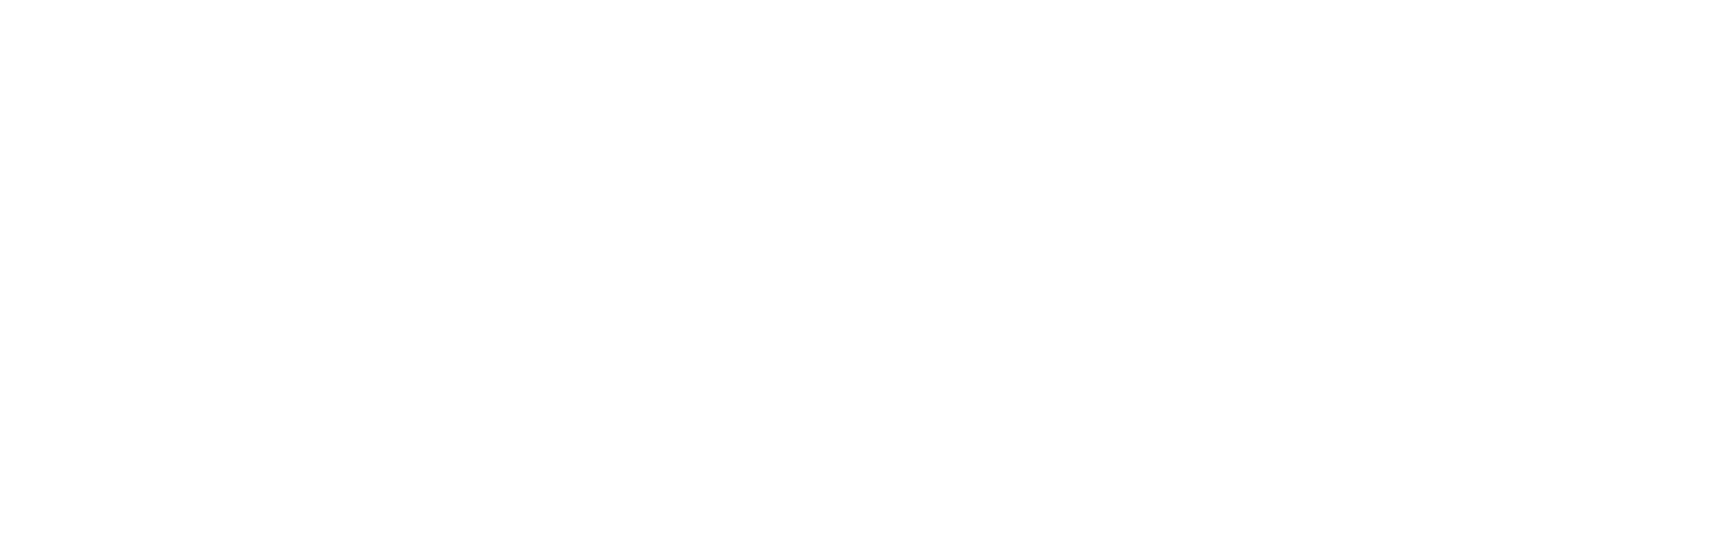 BVK